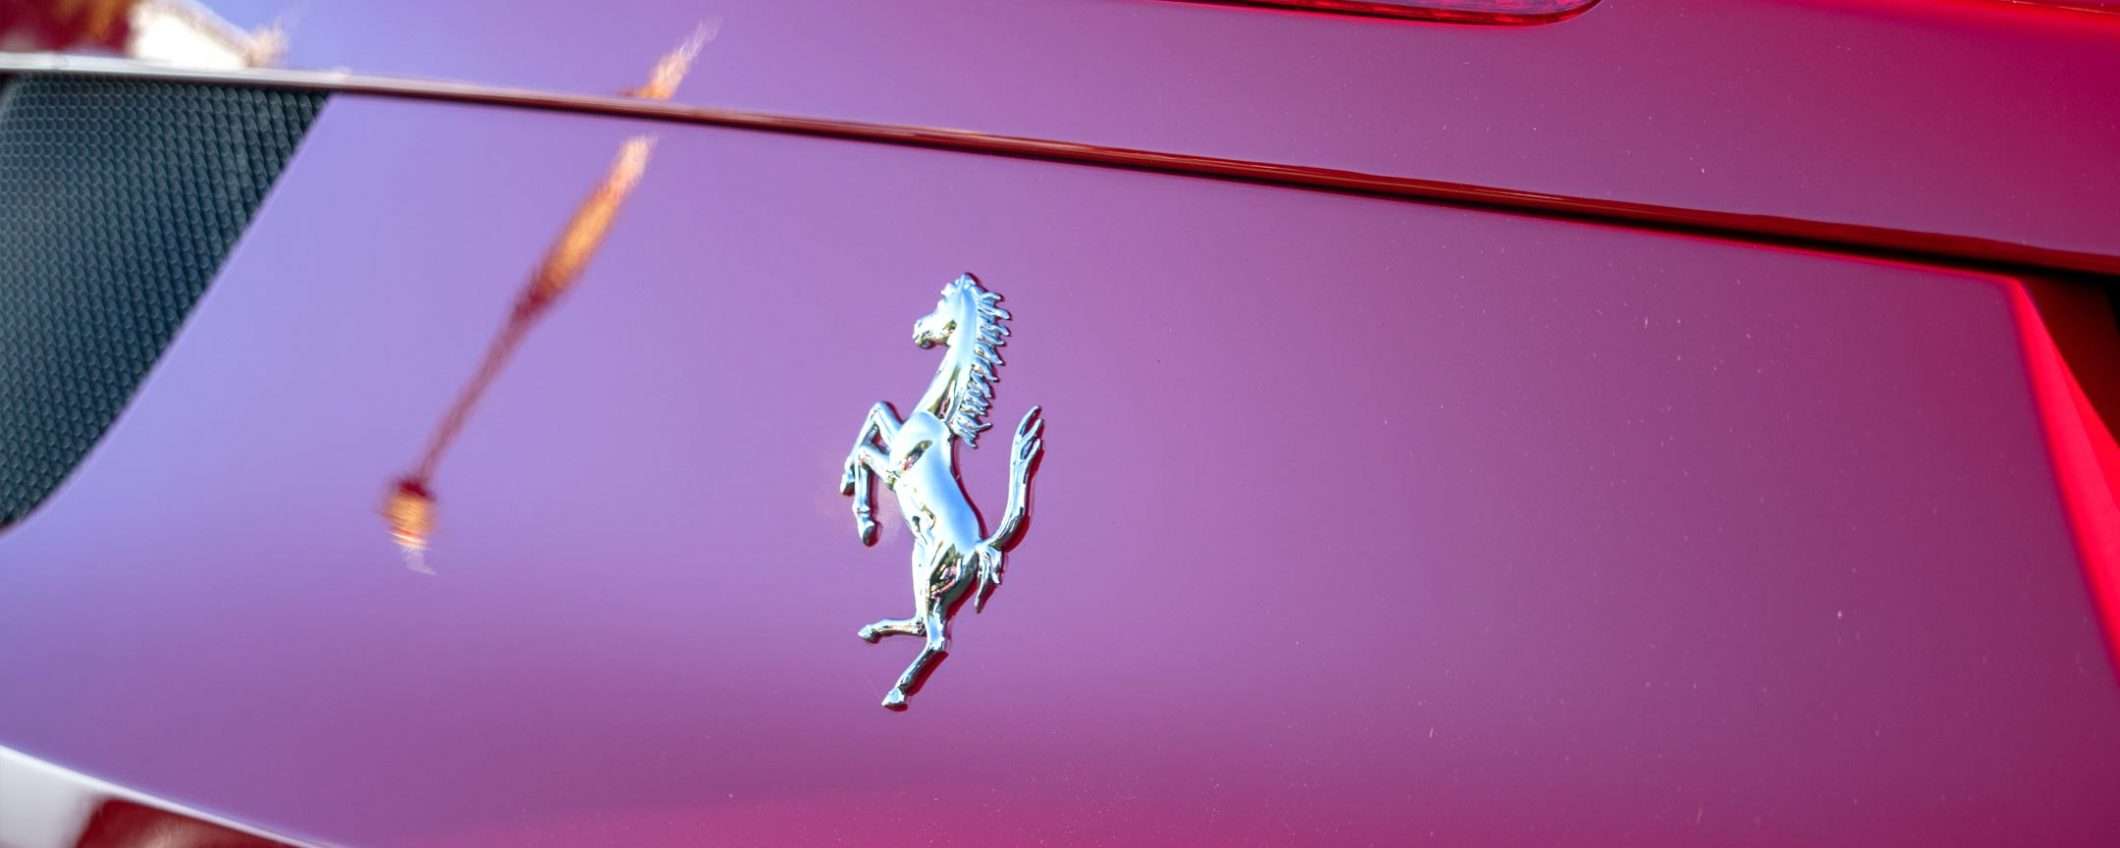 La prima auto elettrica Ferrari dopo il 2025